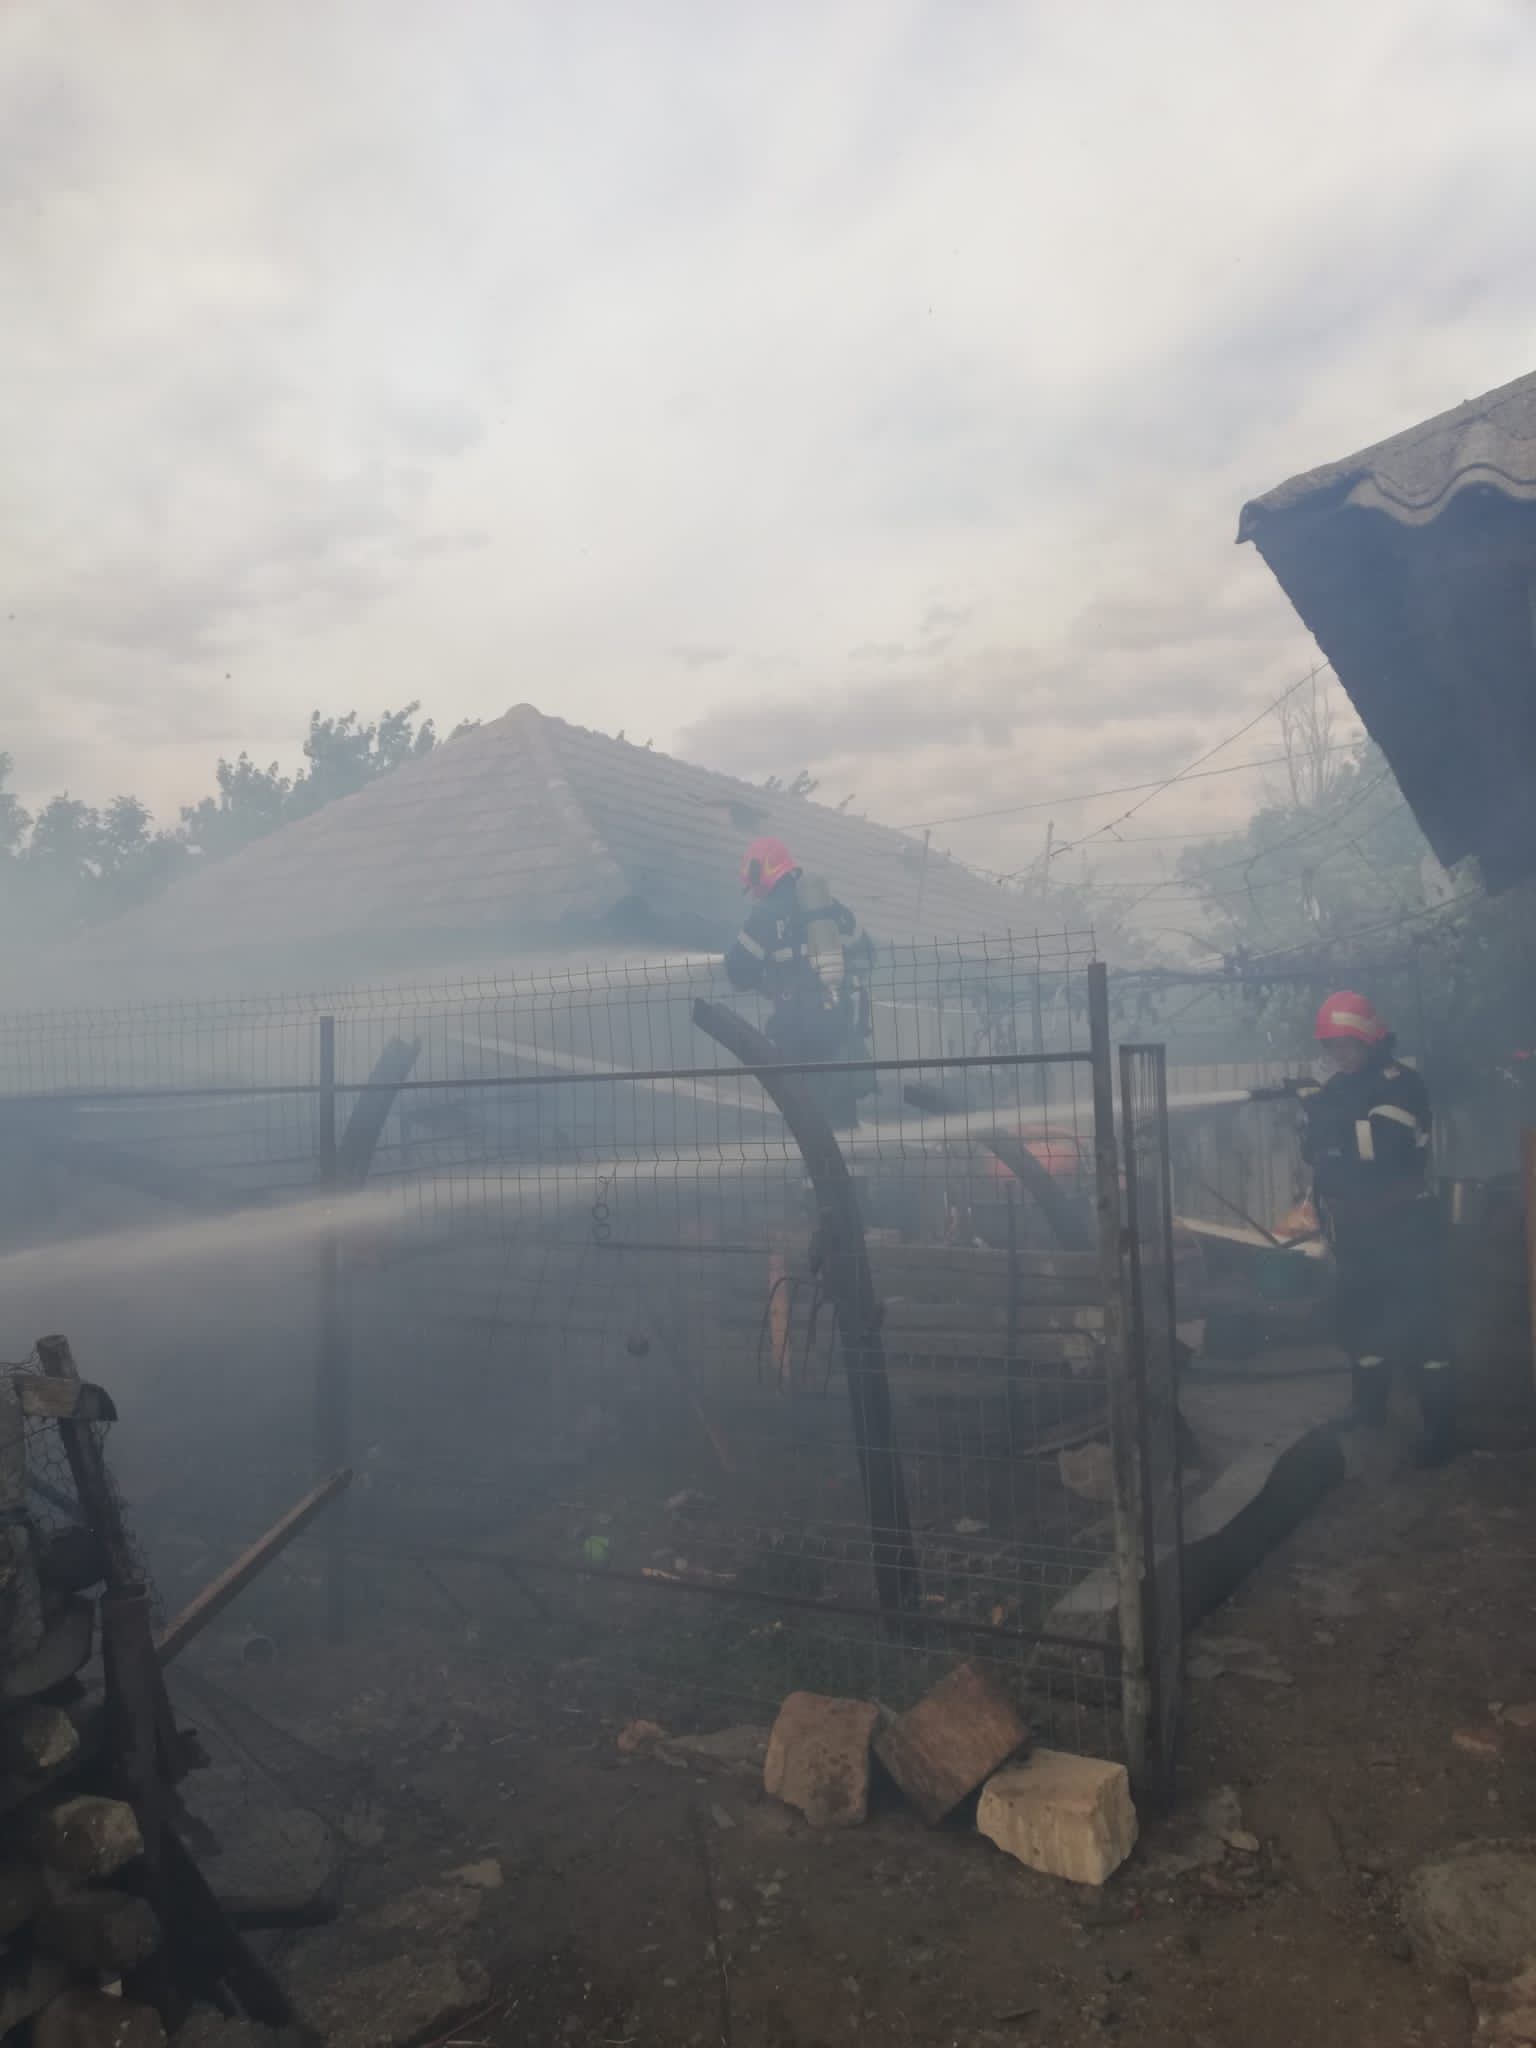 Jocul copiilor cu focul a făcut ca, în circa 2 ore, să fie distrusă o gospodărie din Mihail Kogălniceanu